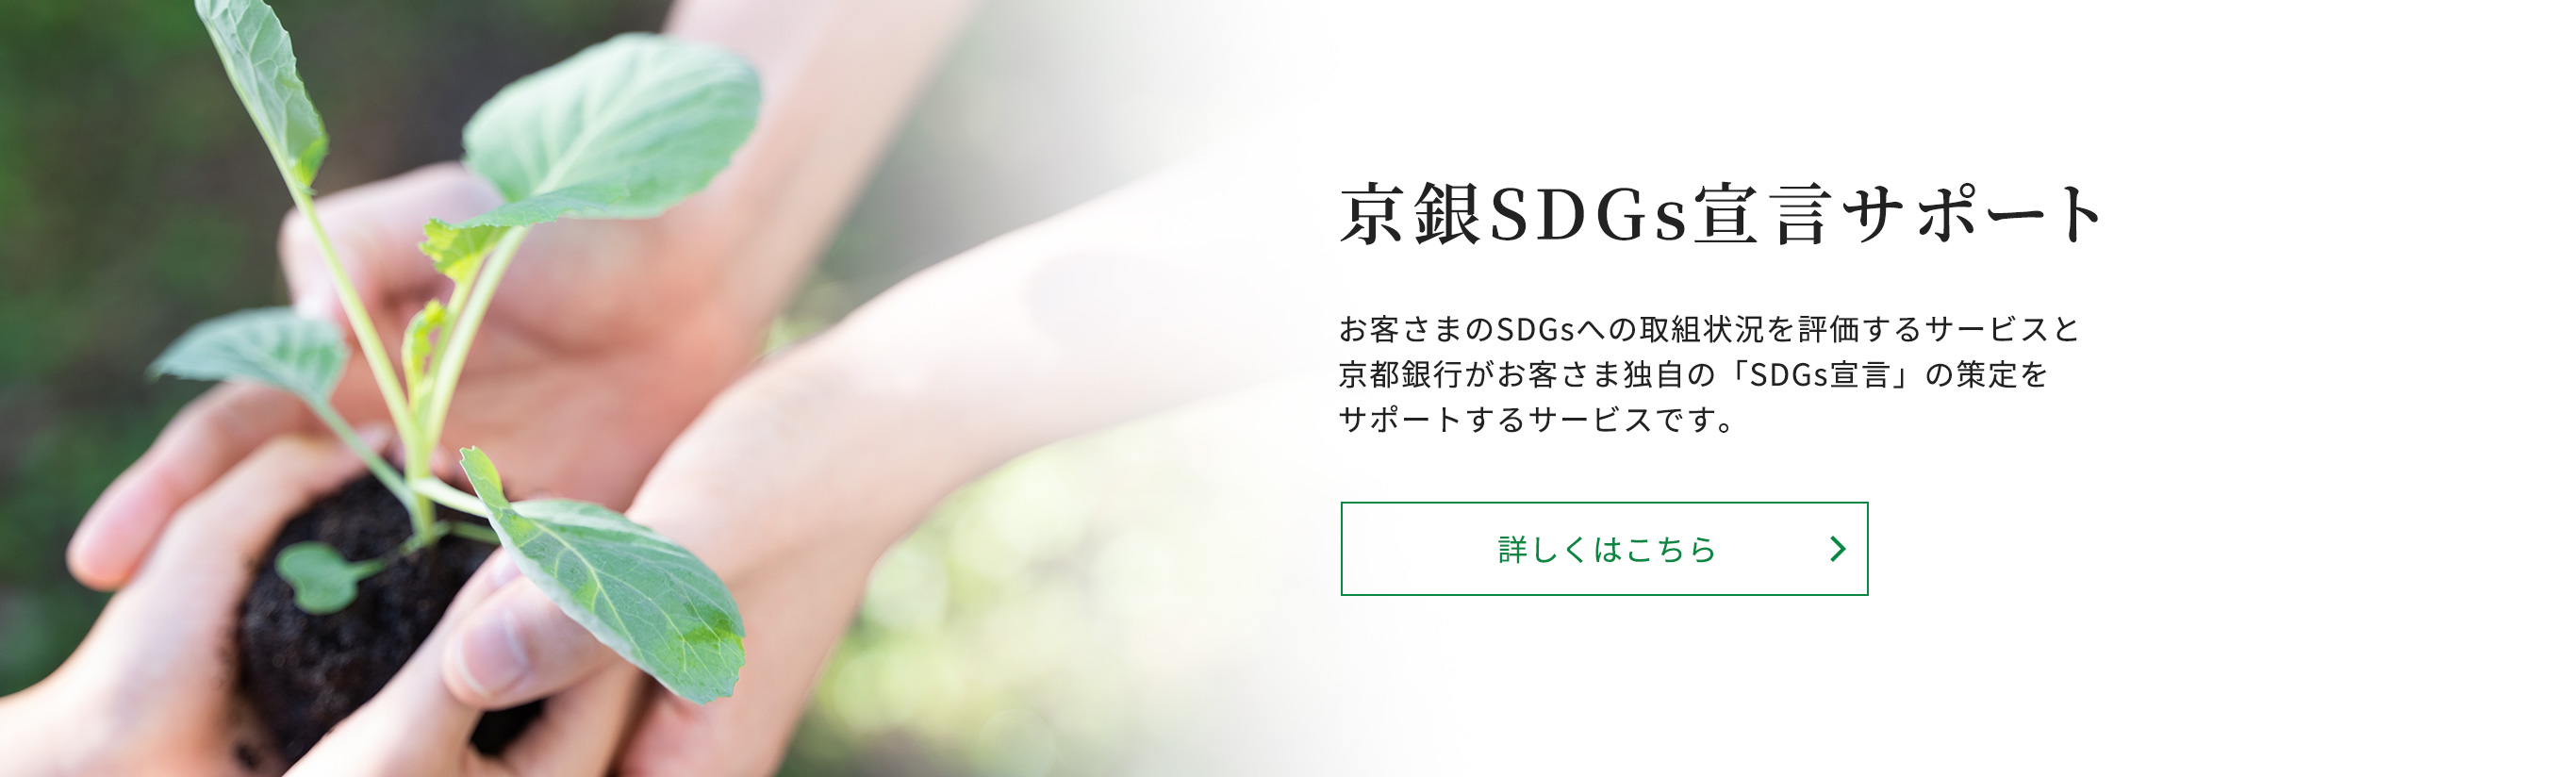 京銀SDGs宣言サポート